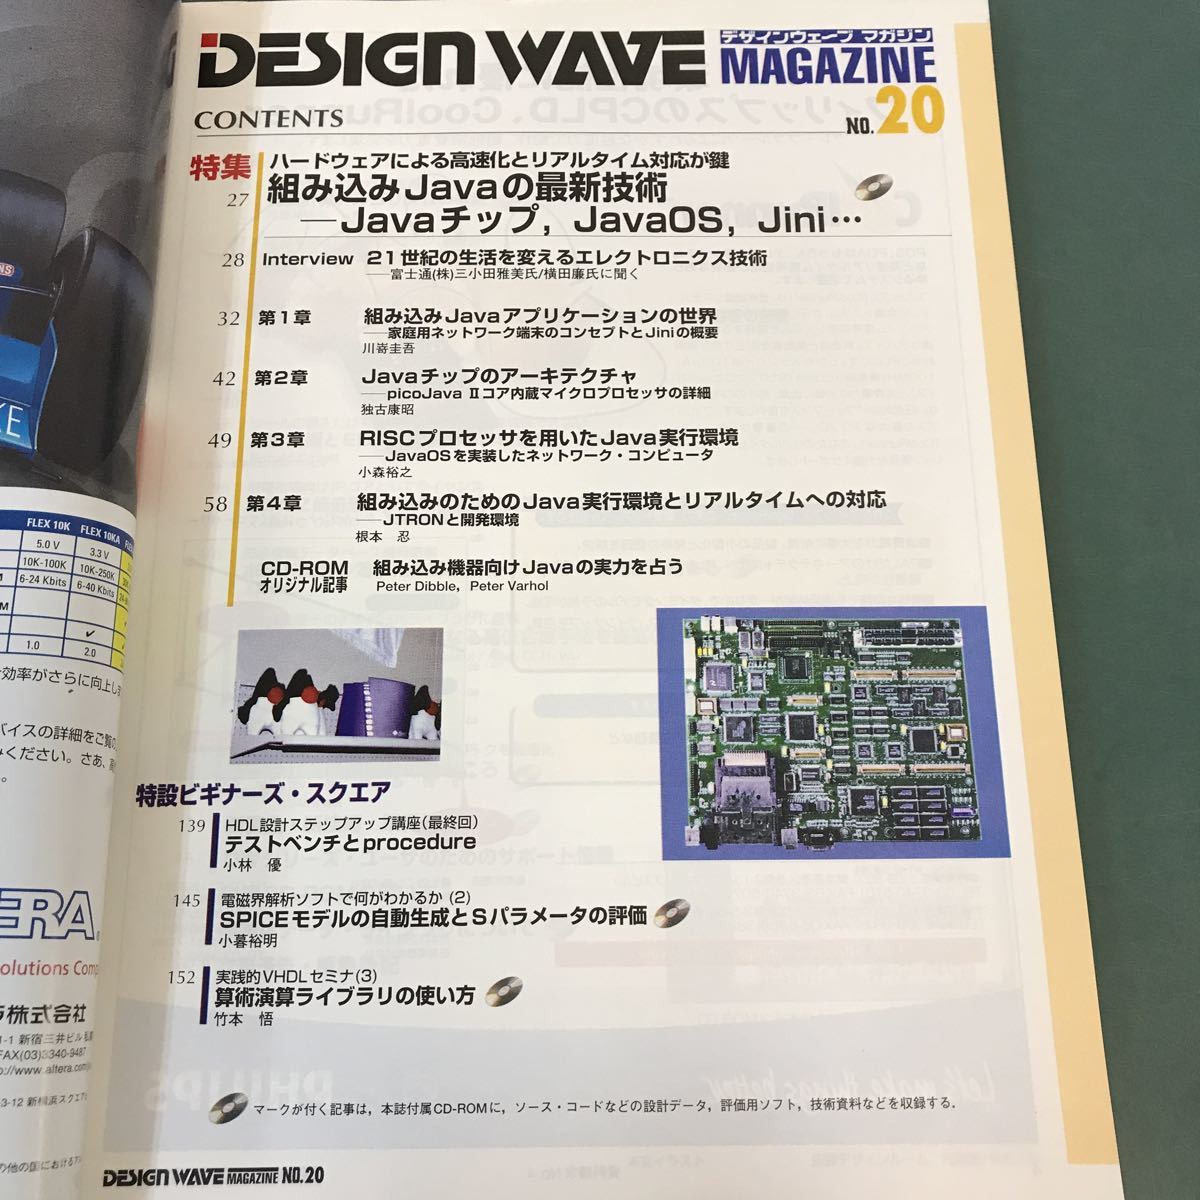 A17-094 DESIGN WAVE MAGAZINE No.20 специальный выпуск встроенный Java. новейший технология Java chip,JavaOS,Jini CQ выпускать фирма 